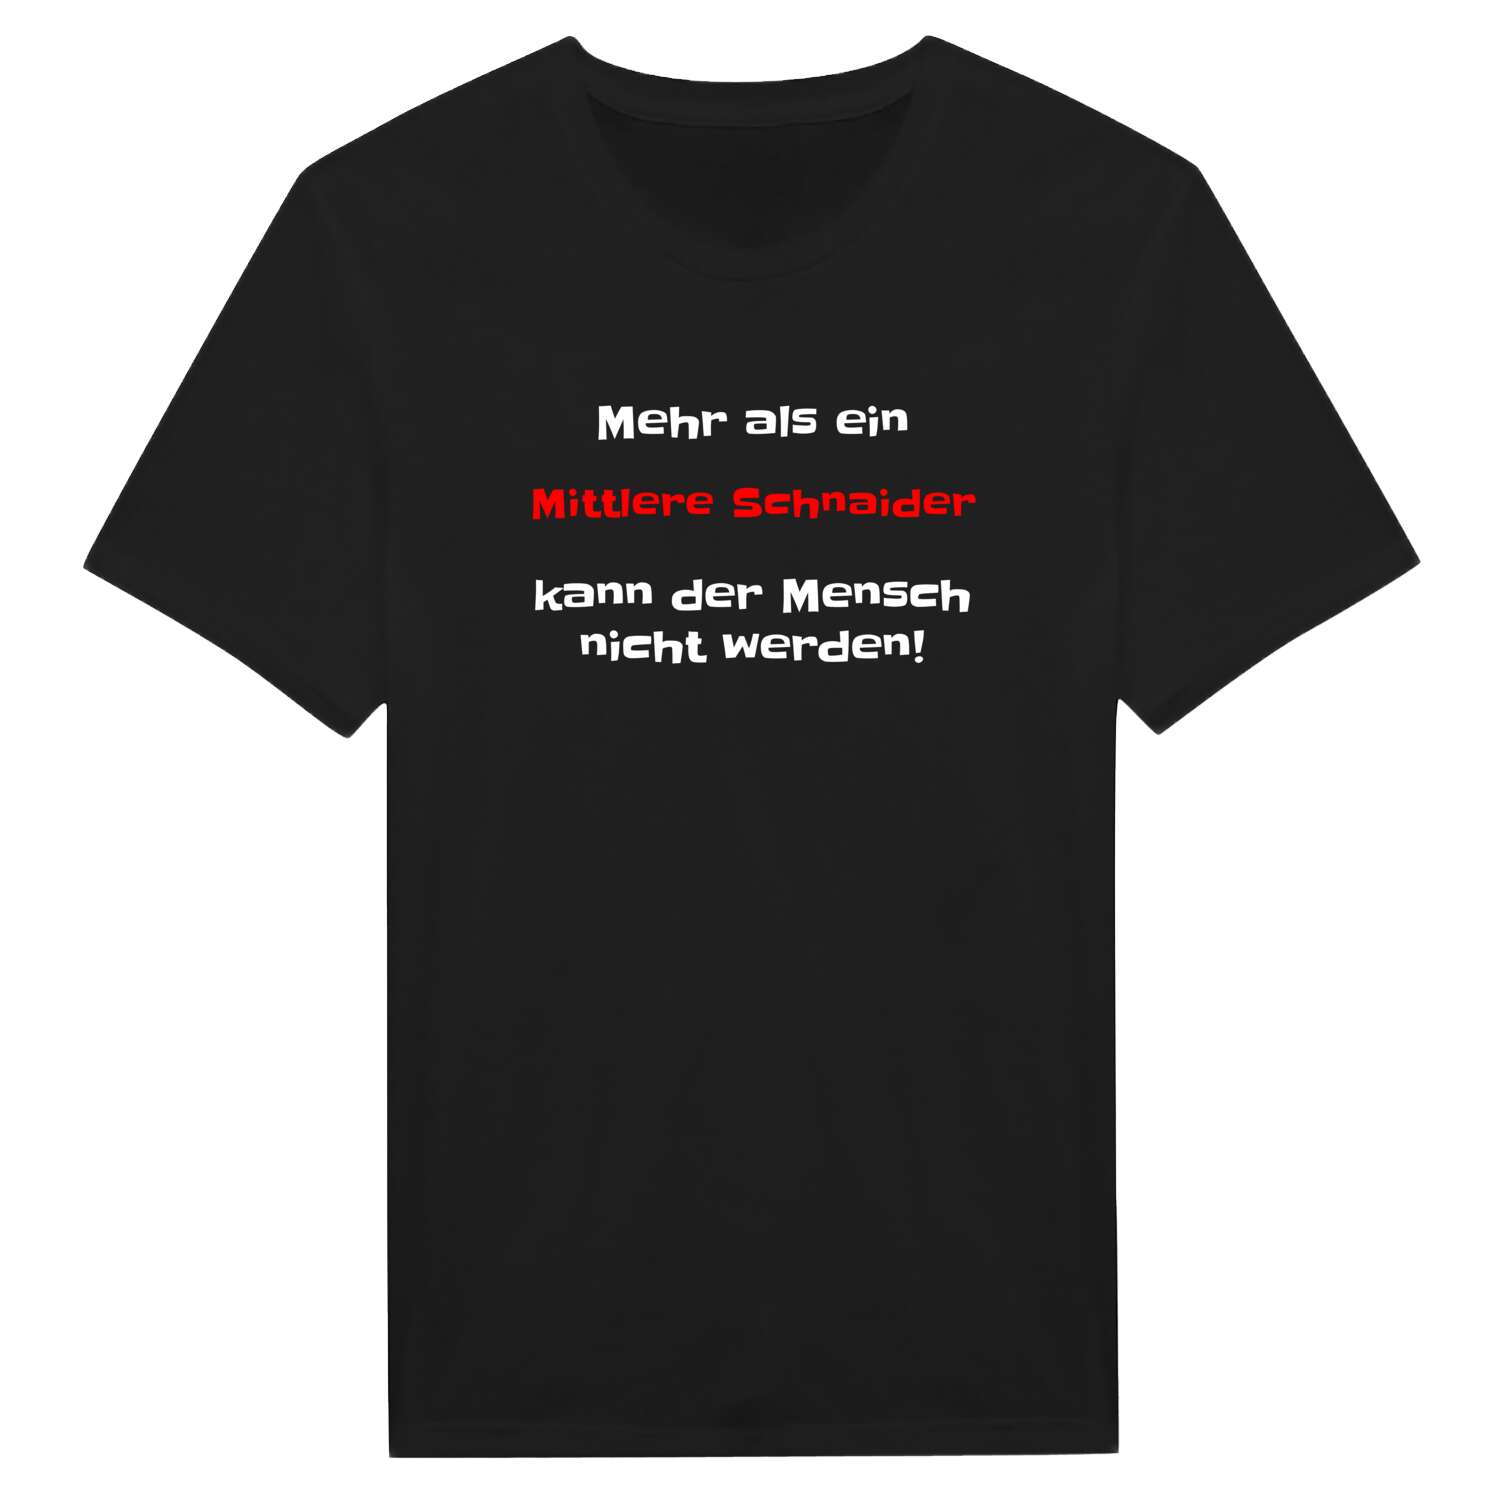 Mittlere Schnaid T-Shirt »Mehr als ein«